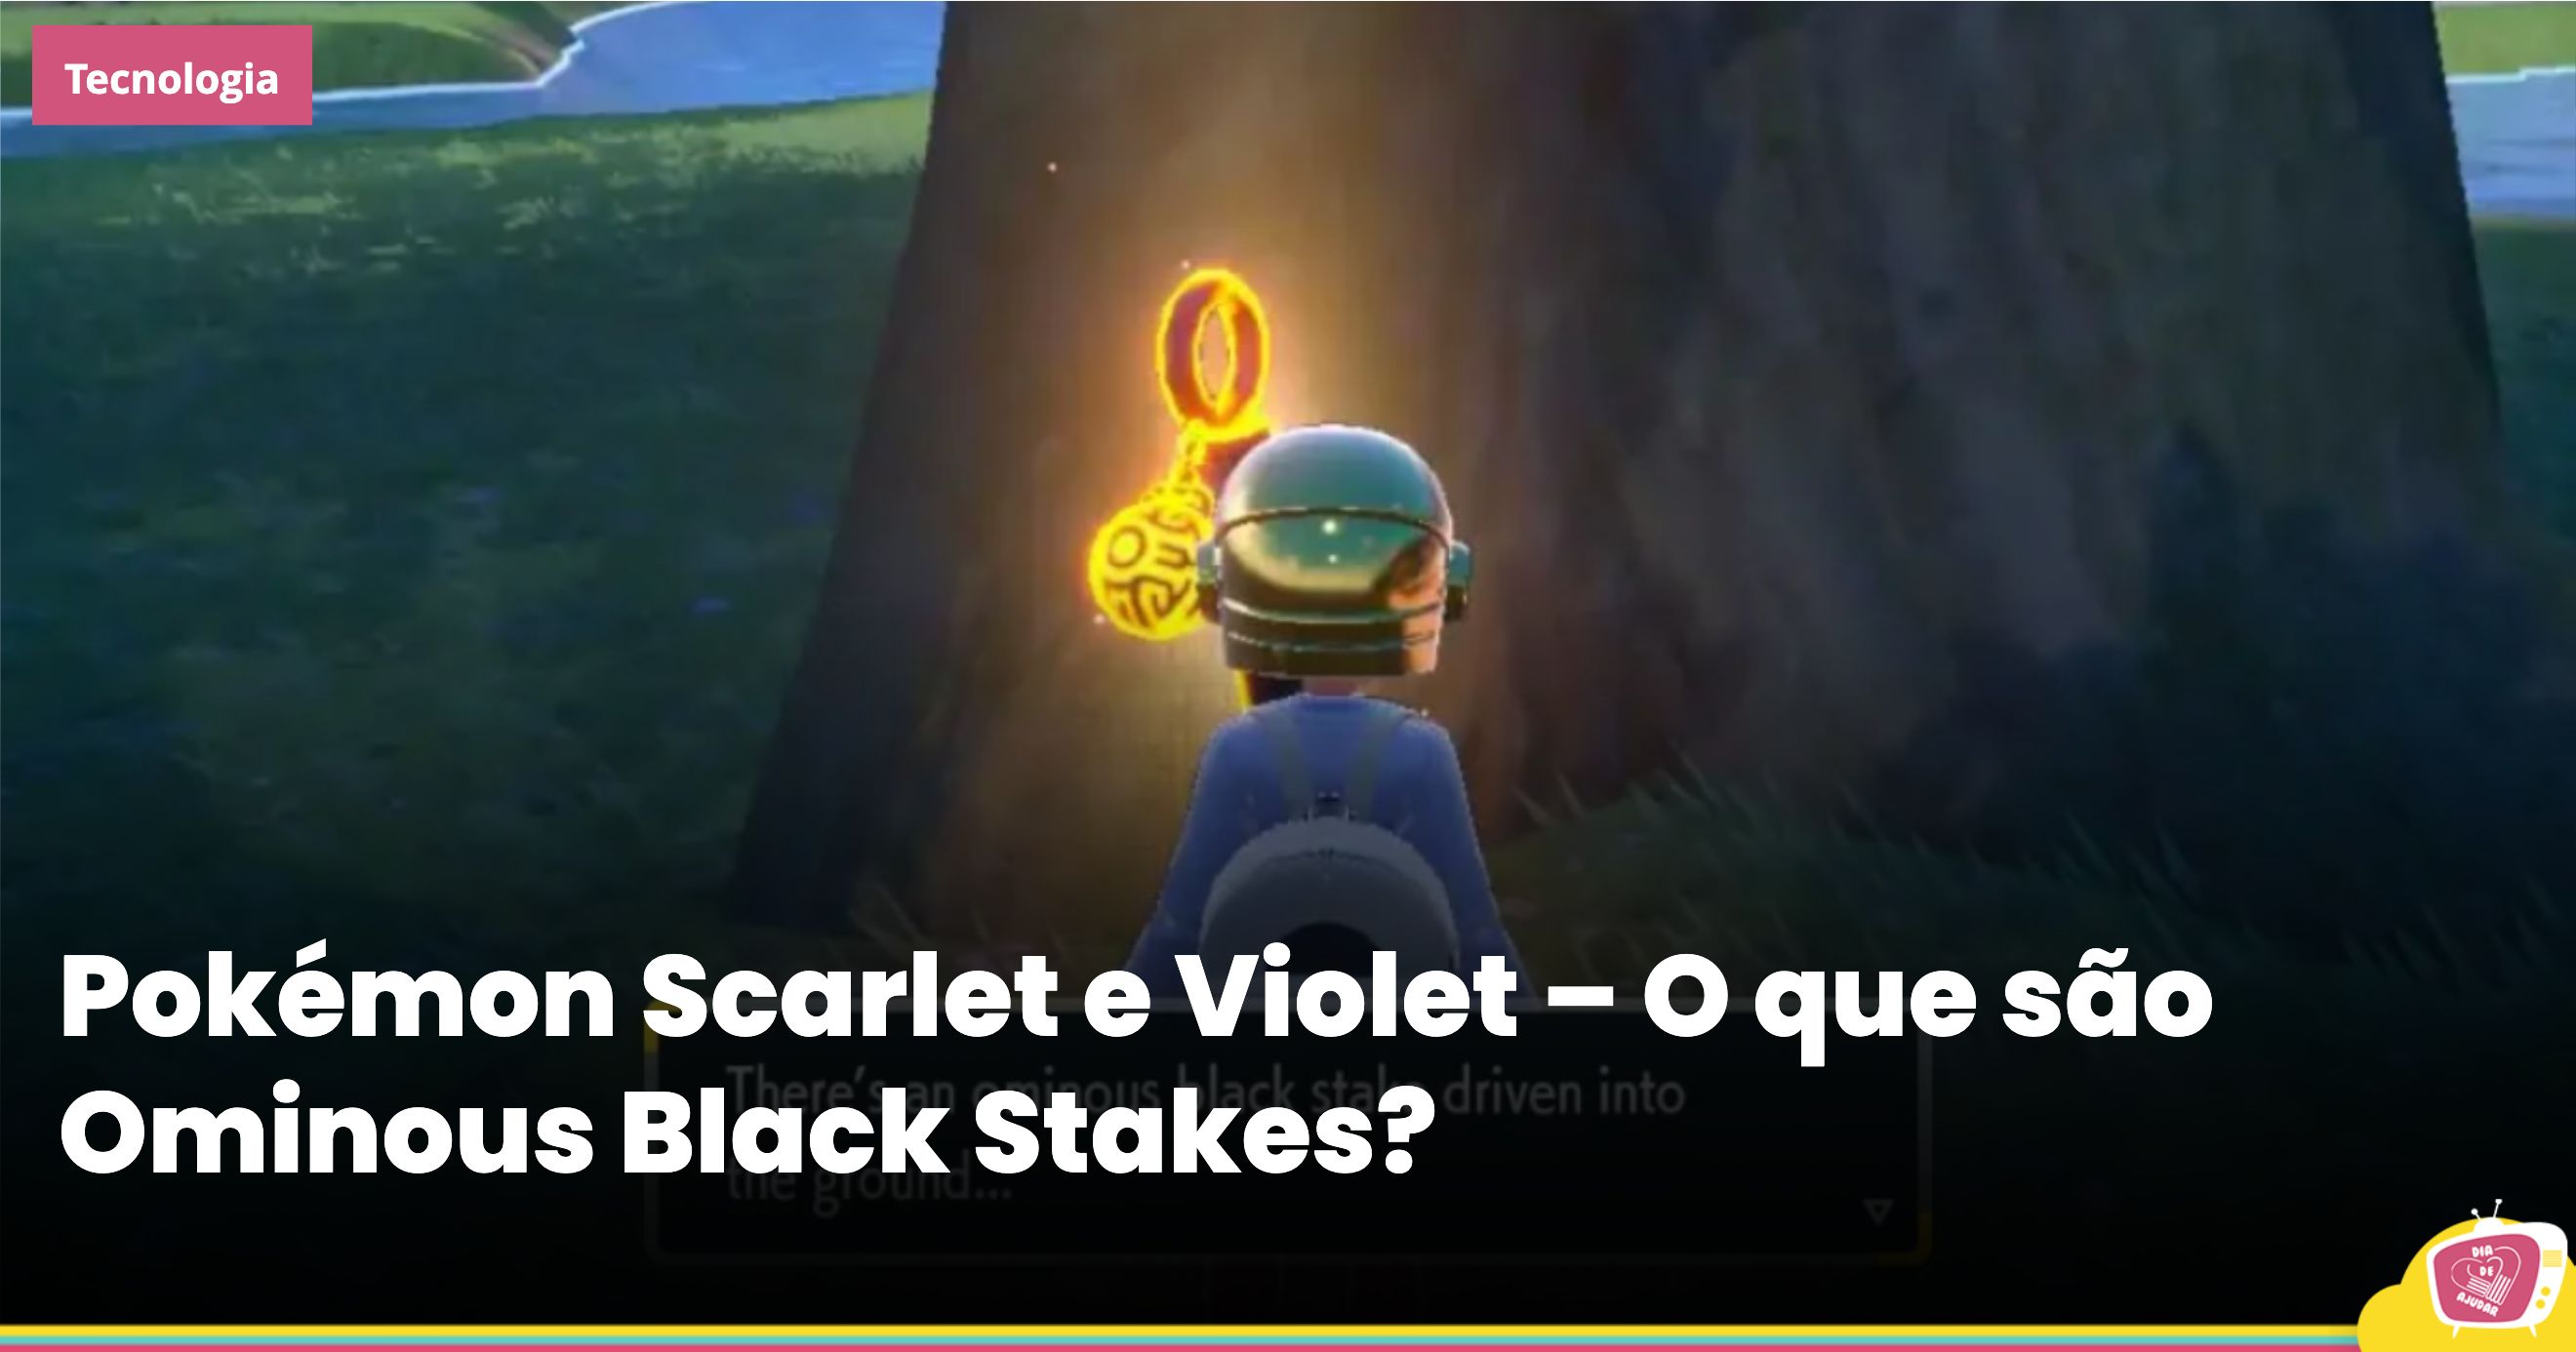 O que são as Ominous Black Stakes em Pokémon Scarlet & Violet?